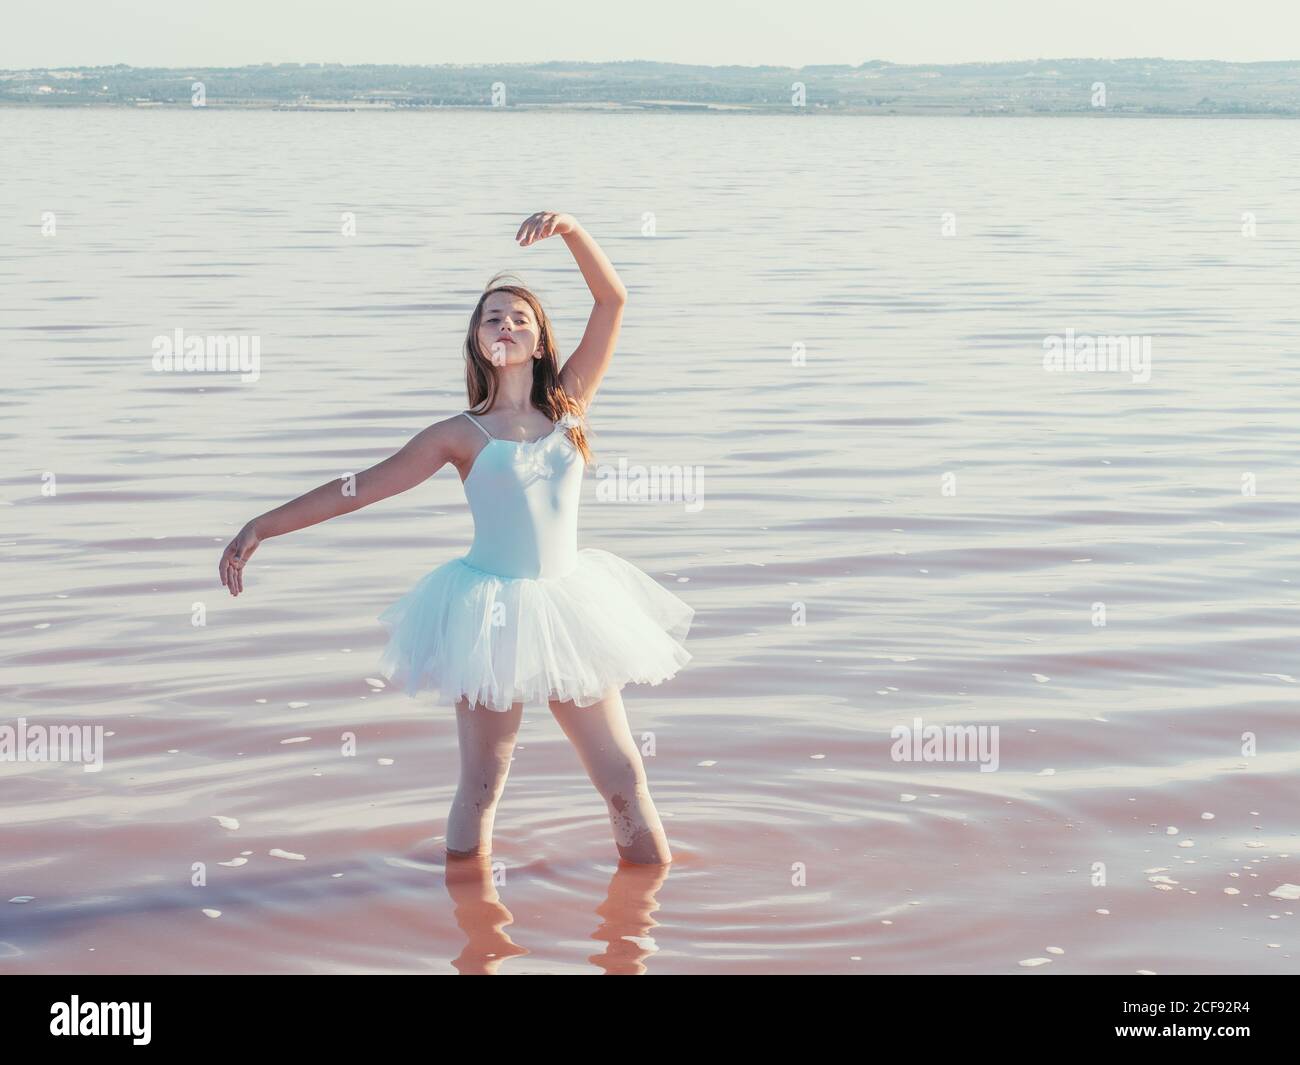 Classica posizione balletto con grazia eseguito da ballerina con mani alzanti in acqua fresca e ondulata in una giornata di sole Foto Stock